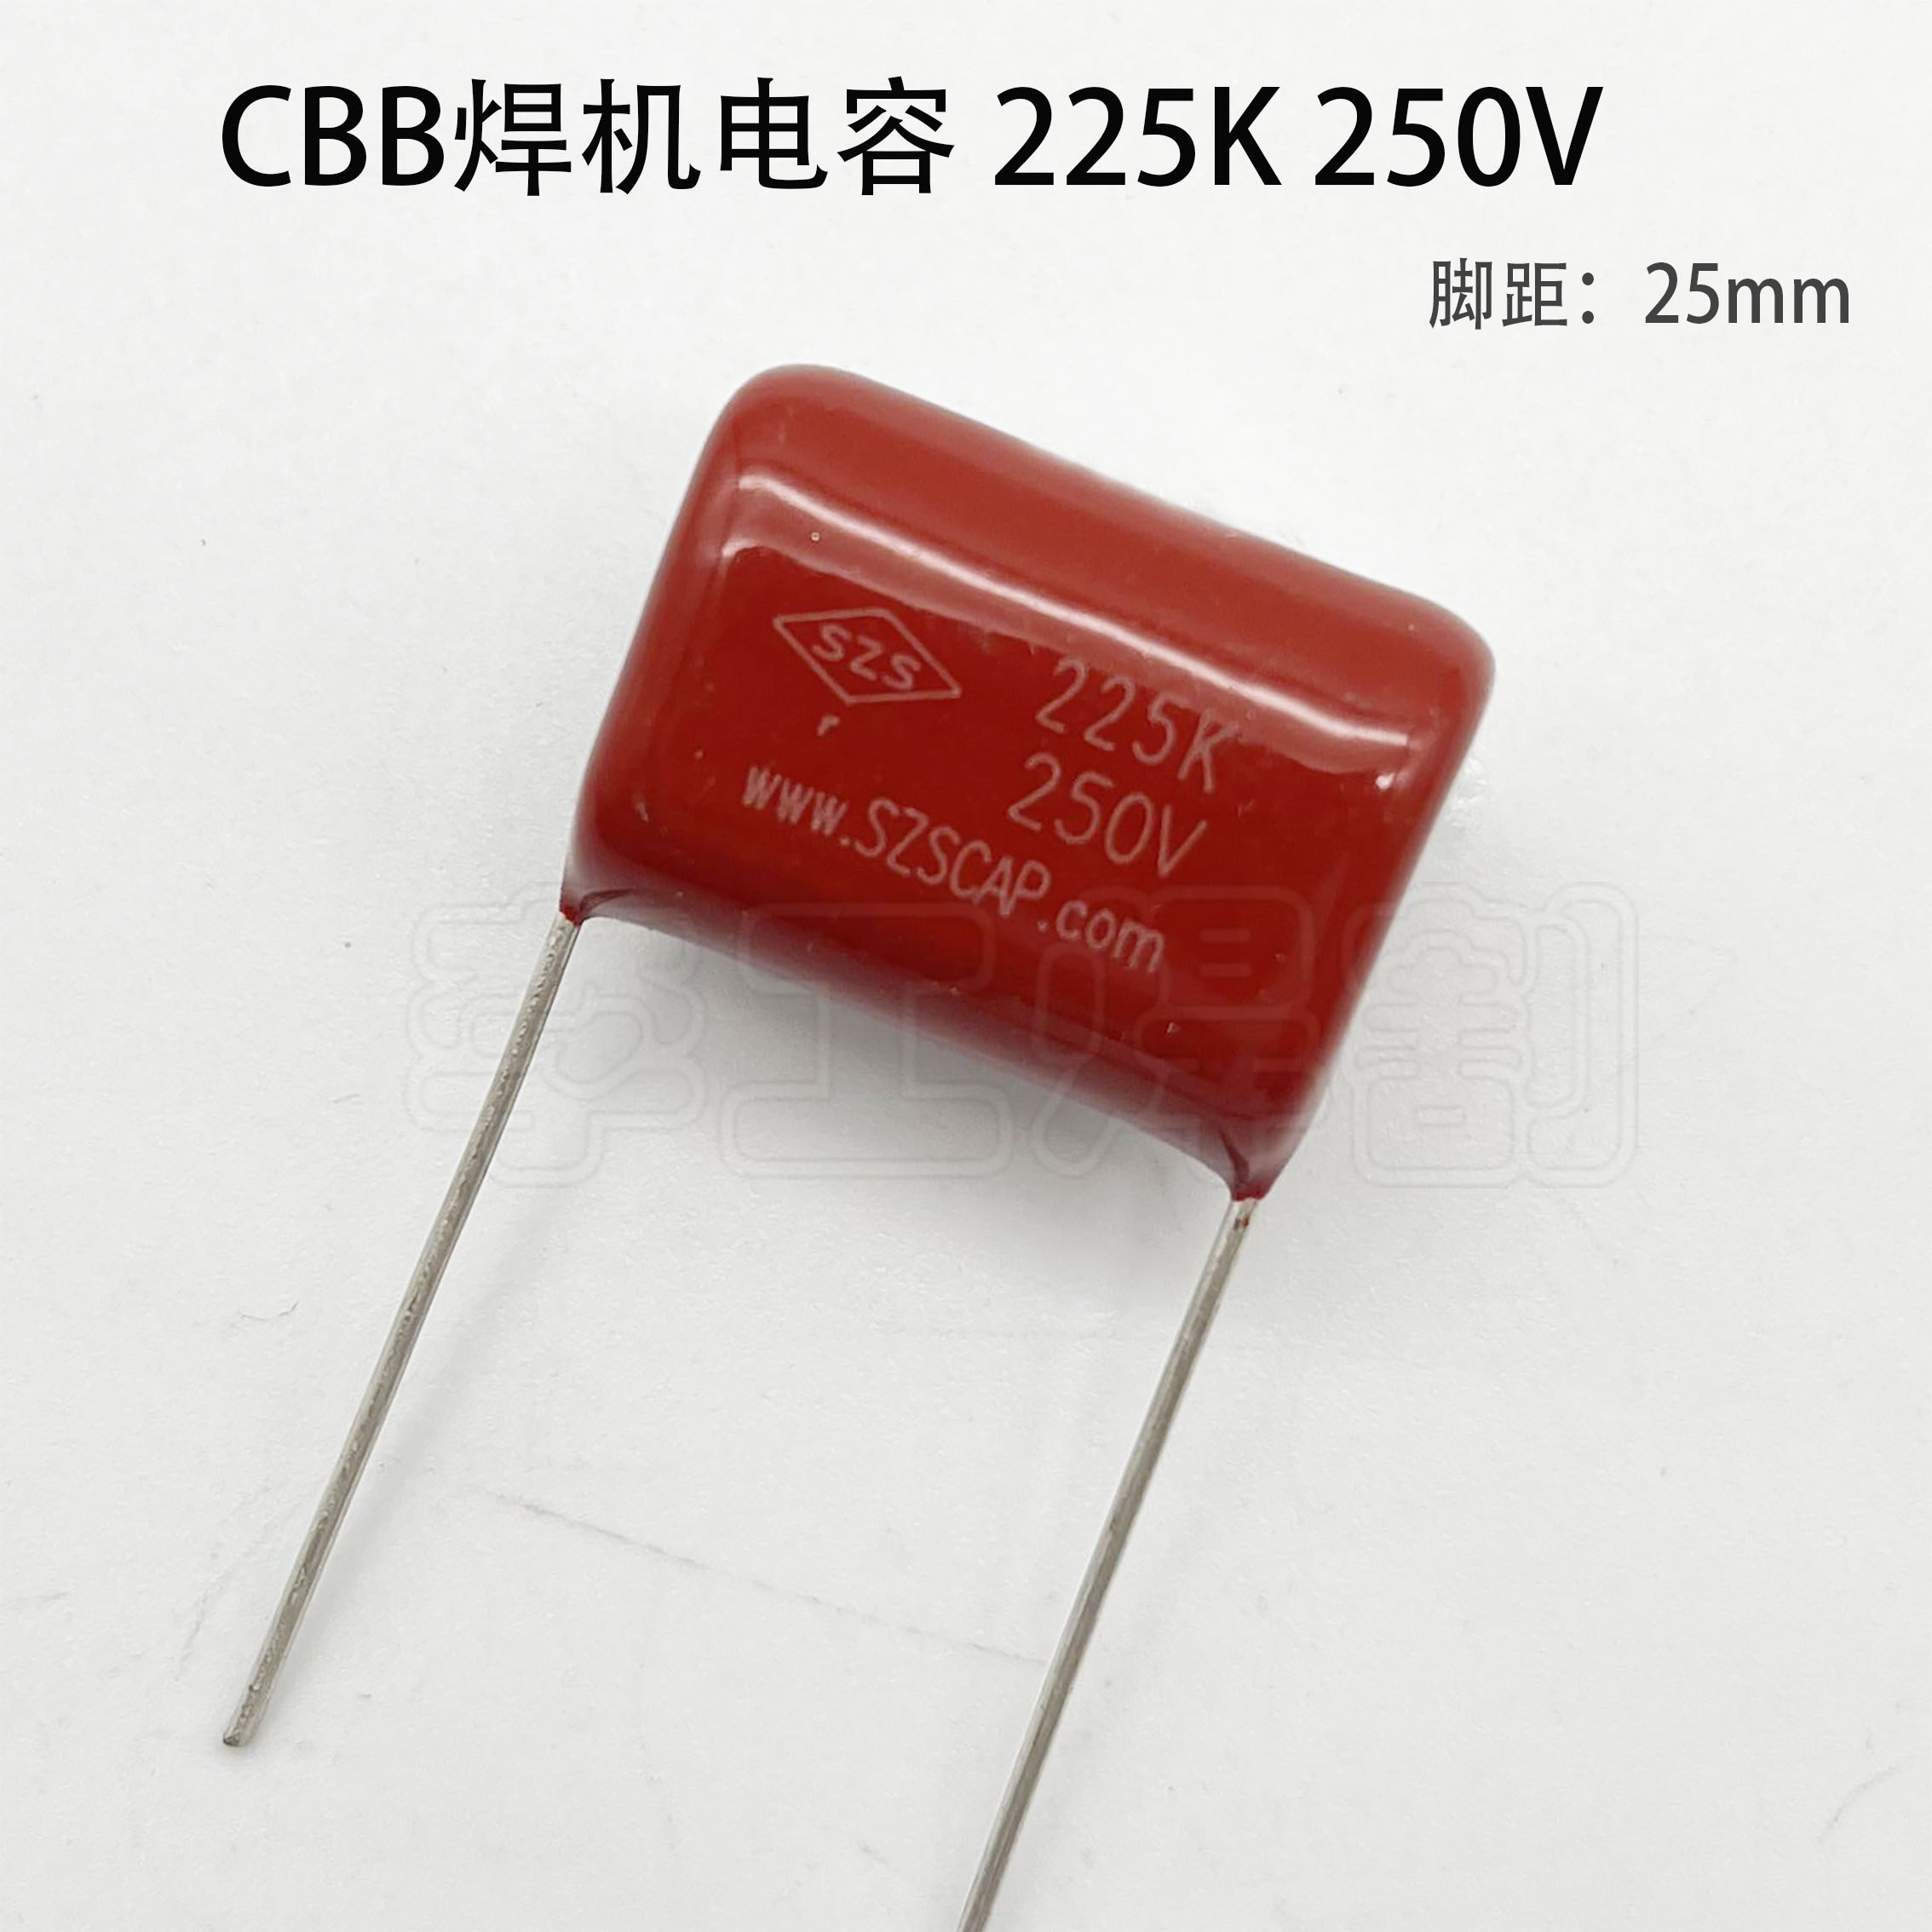 逆变焊机 CBB薄膜电容 225K250V 焊机维修常用电容 脚距25mm